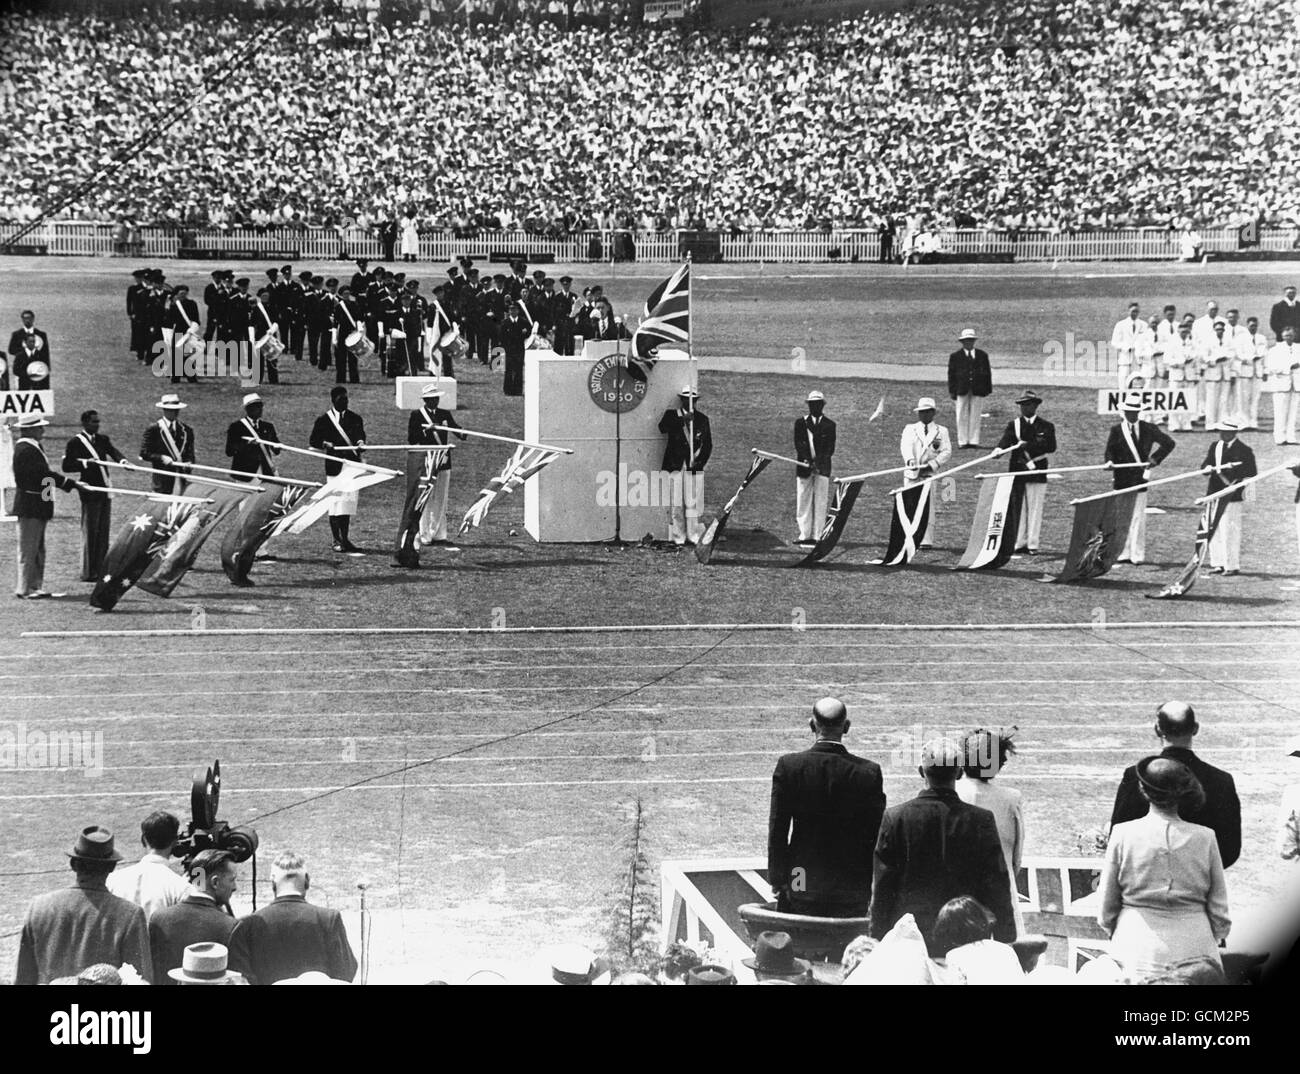 Quarto British Empire Games - cerimonia di apertura - Eden Park, Auckland. Stan Lay, capitano della squadra neozelandese che prende il giuramento di dilettantismo con le bandiere dell'Impero abbassate. Foto Stock